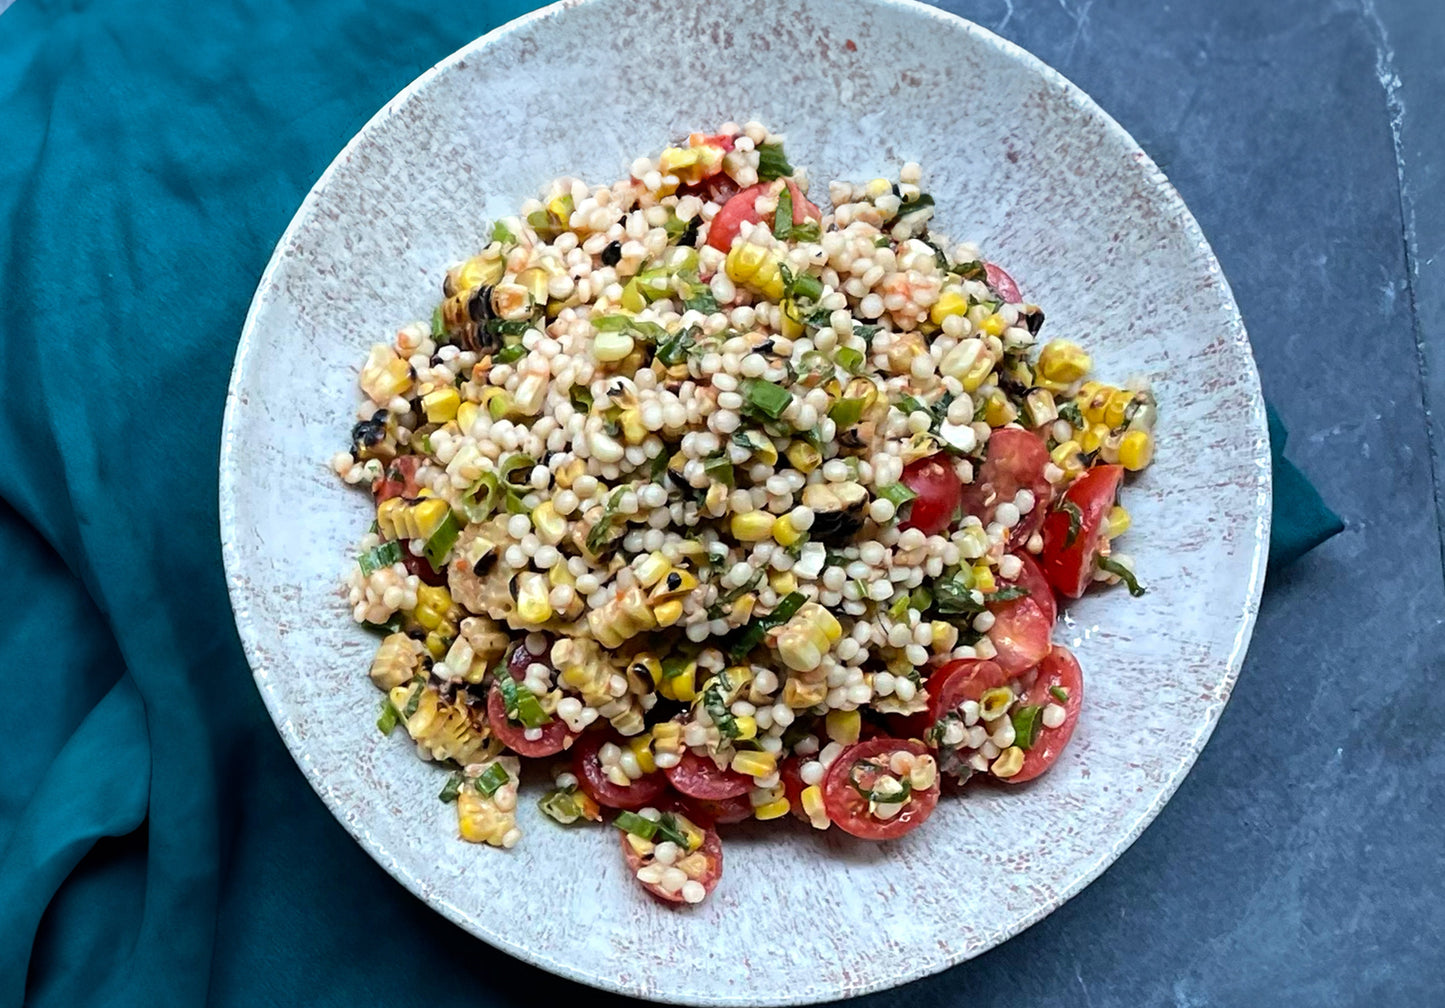 Tomato & Couscous Salad | Serves 4-6